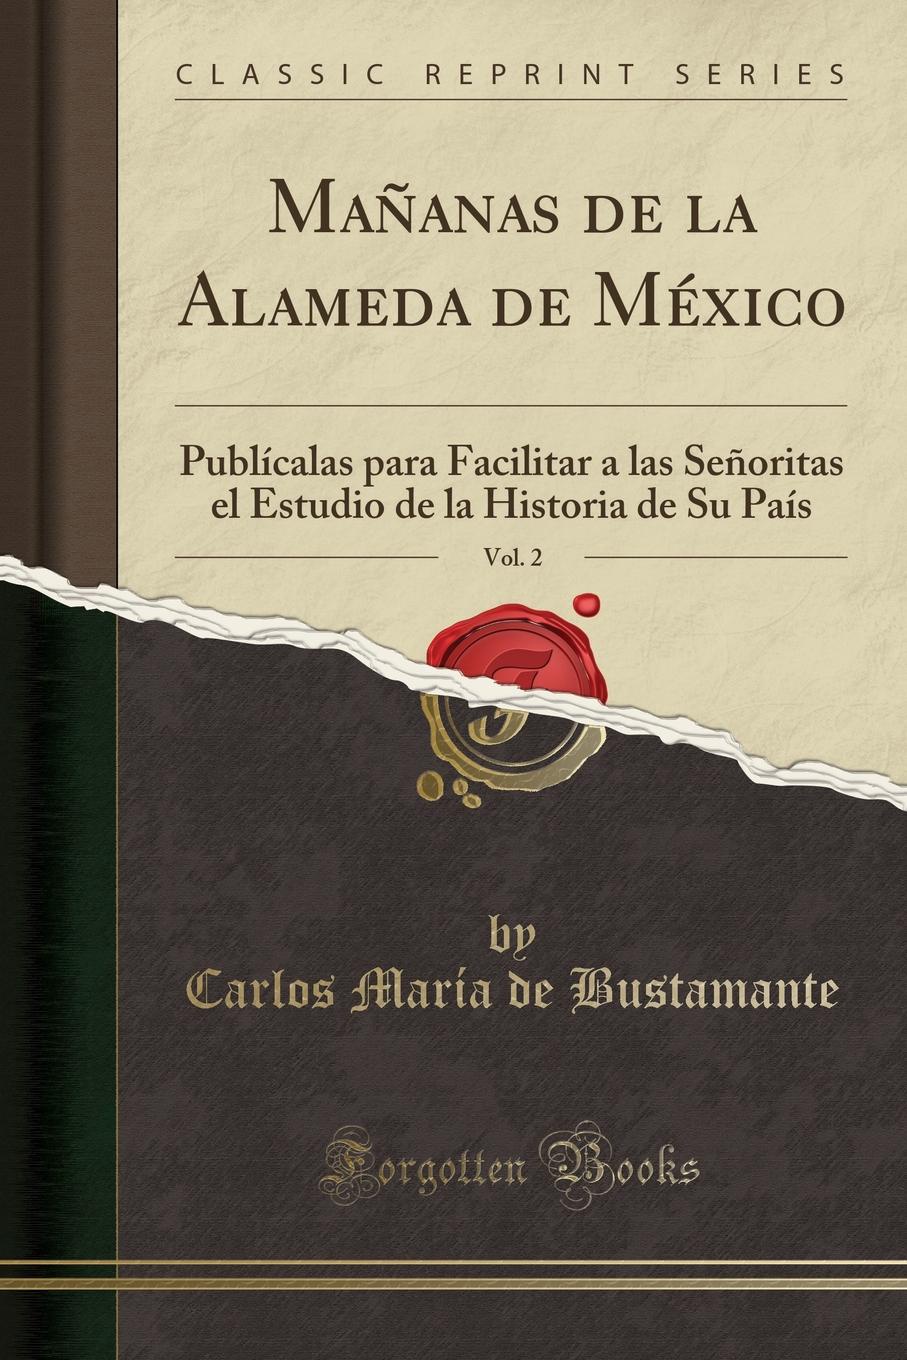 Carlos María de Bustamante Mananas de la Alameda de Mexico, Vol. 2. Publicalas para Facilitar a las Senoritas el Estudio de la Historia de Su Pais (Classic Reprint)